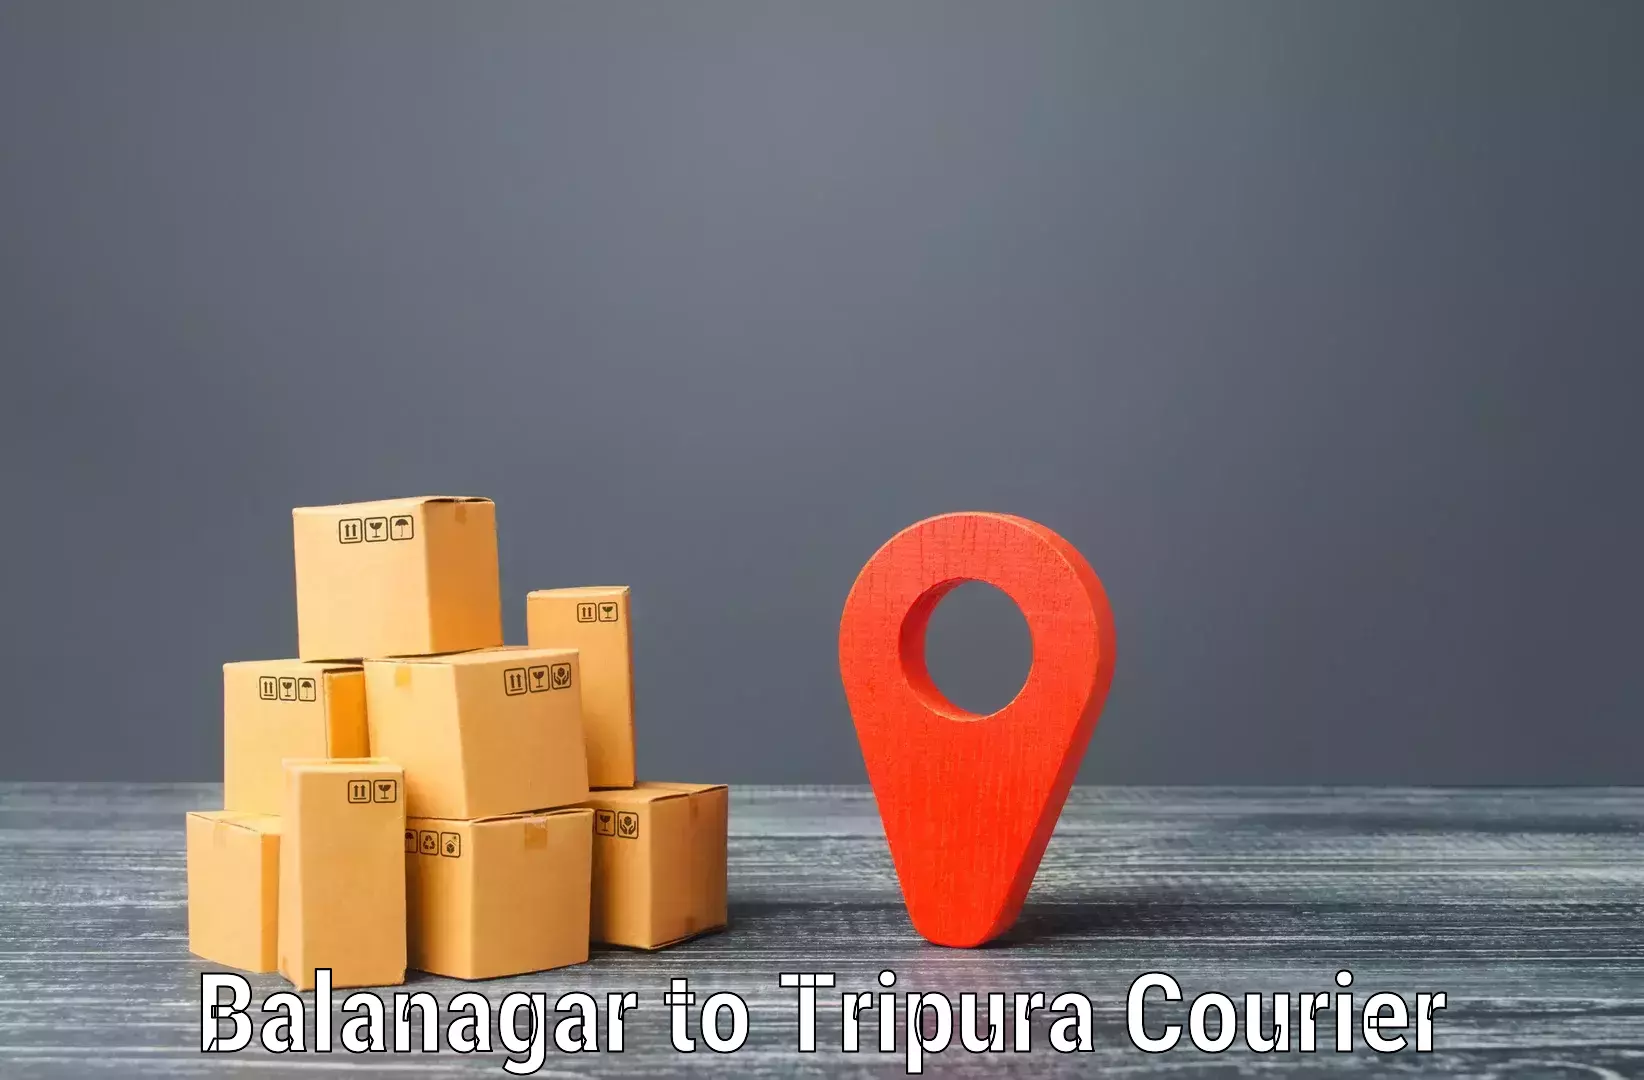 Next day courier Balanagar to Agartala